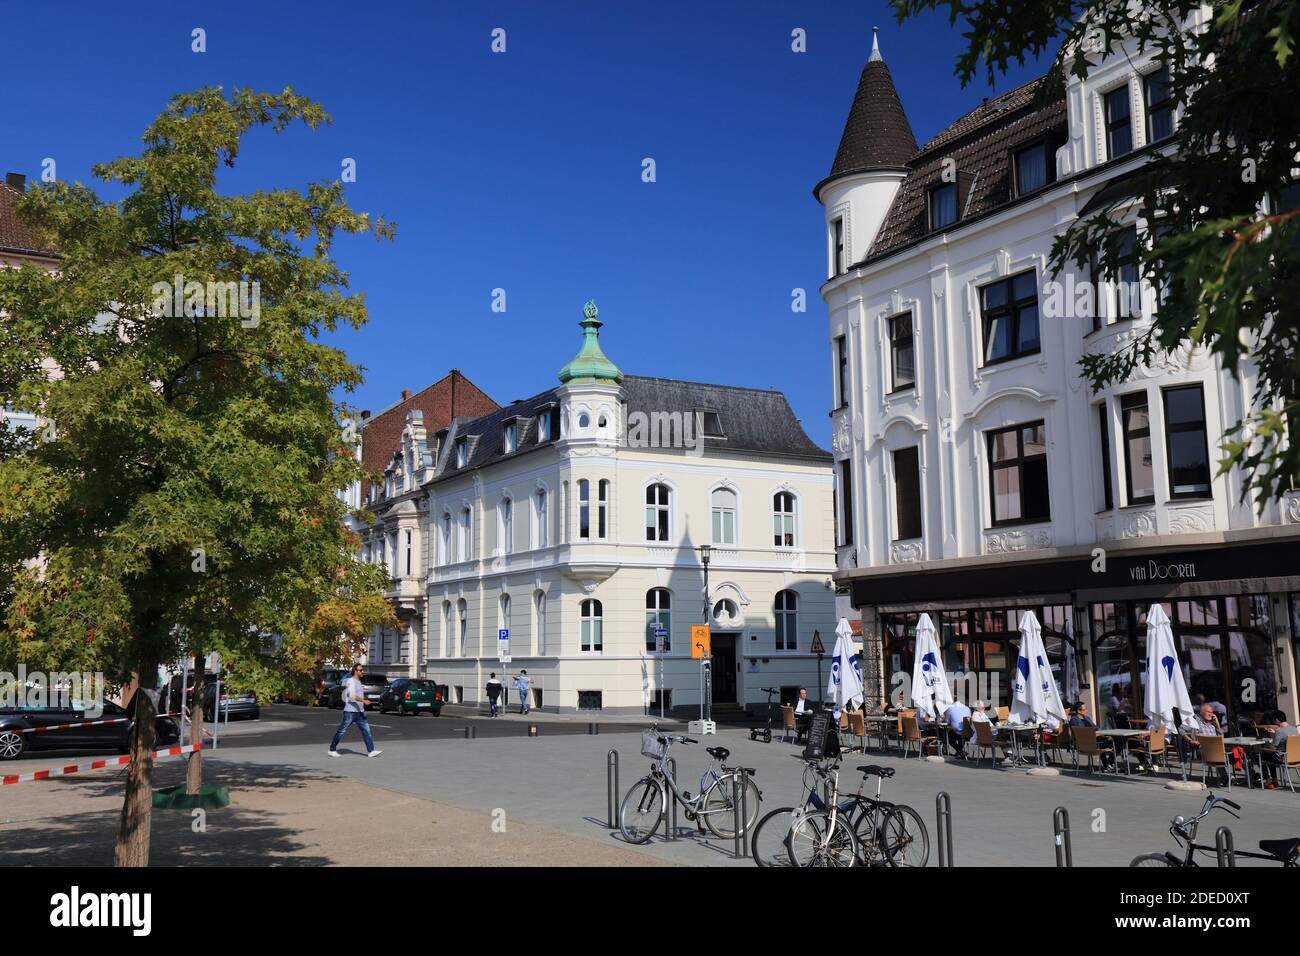 MÖNCHENGLADBACH, DEUTSCHLAND - 18. SEPTEMBER 2020: Altstadt von Gladbach in Mönchengladbach, einer bedeutenden Stadt in Nordrhein-Westfalen. Stockfoto